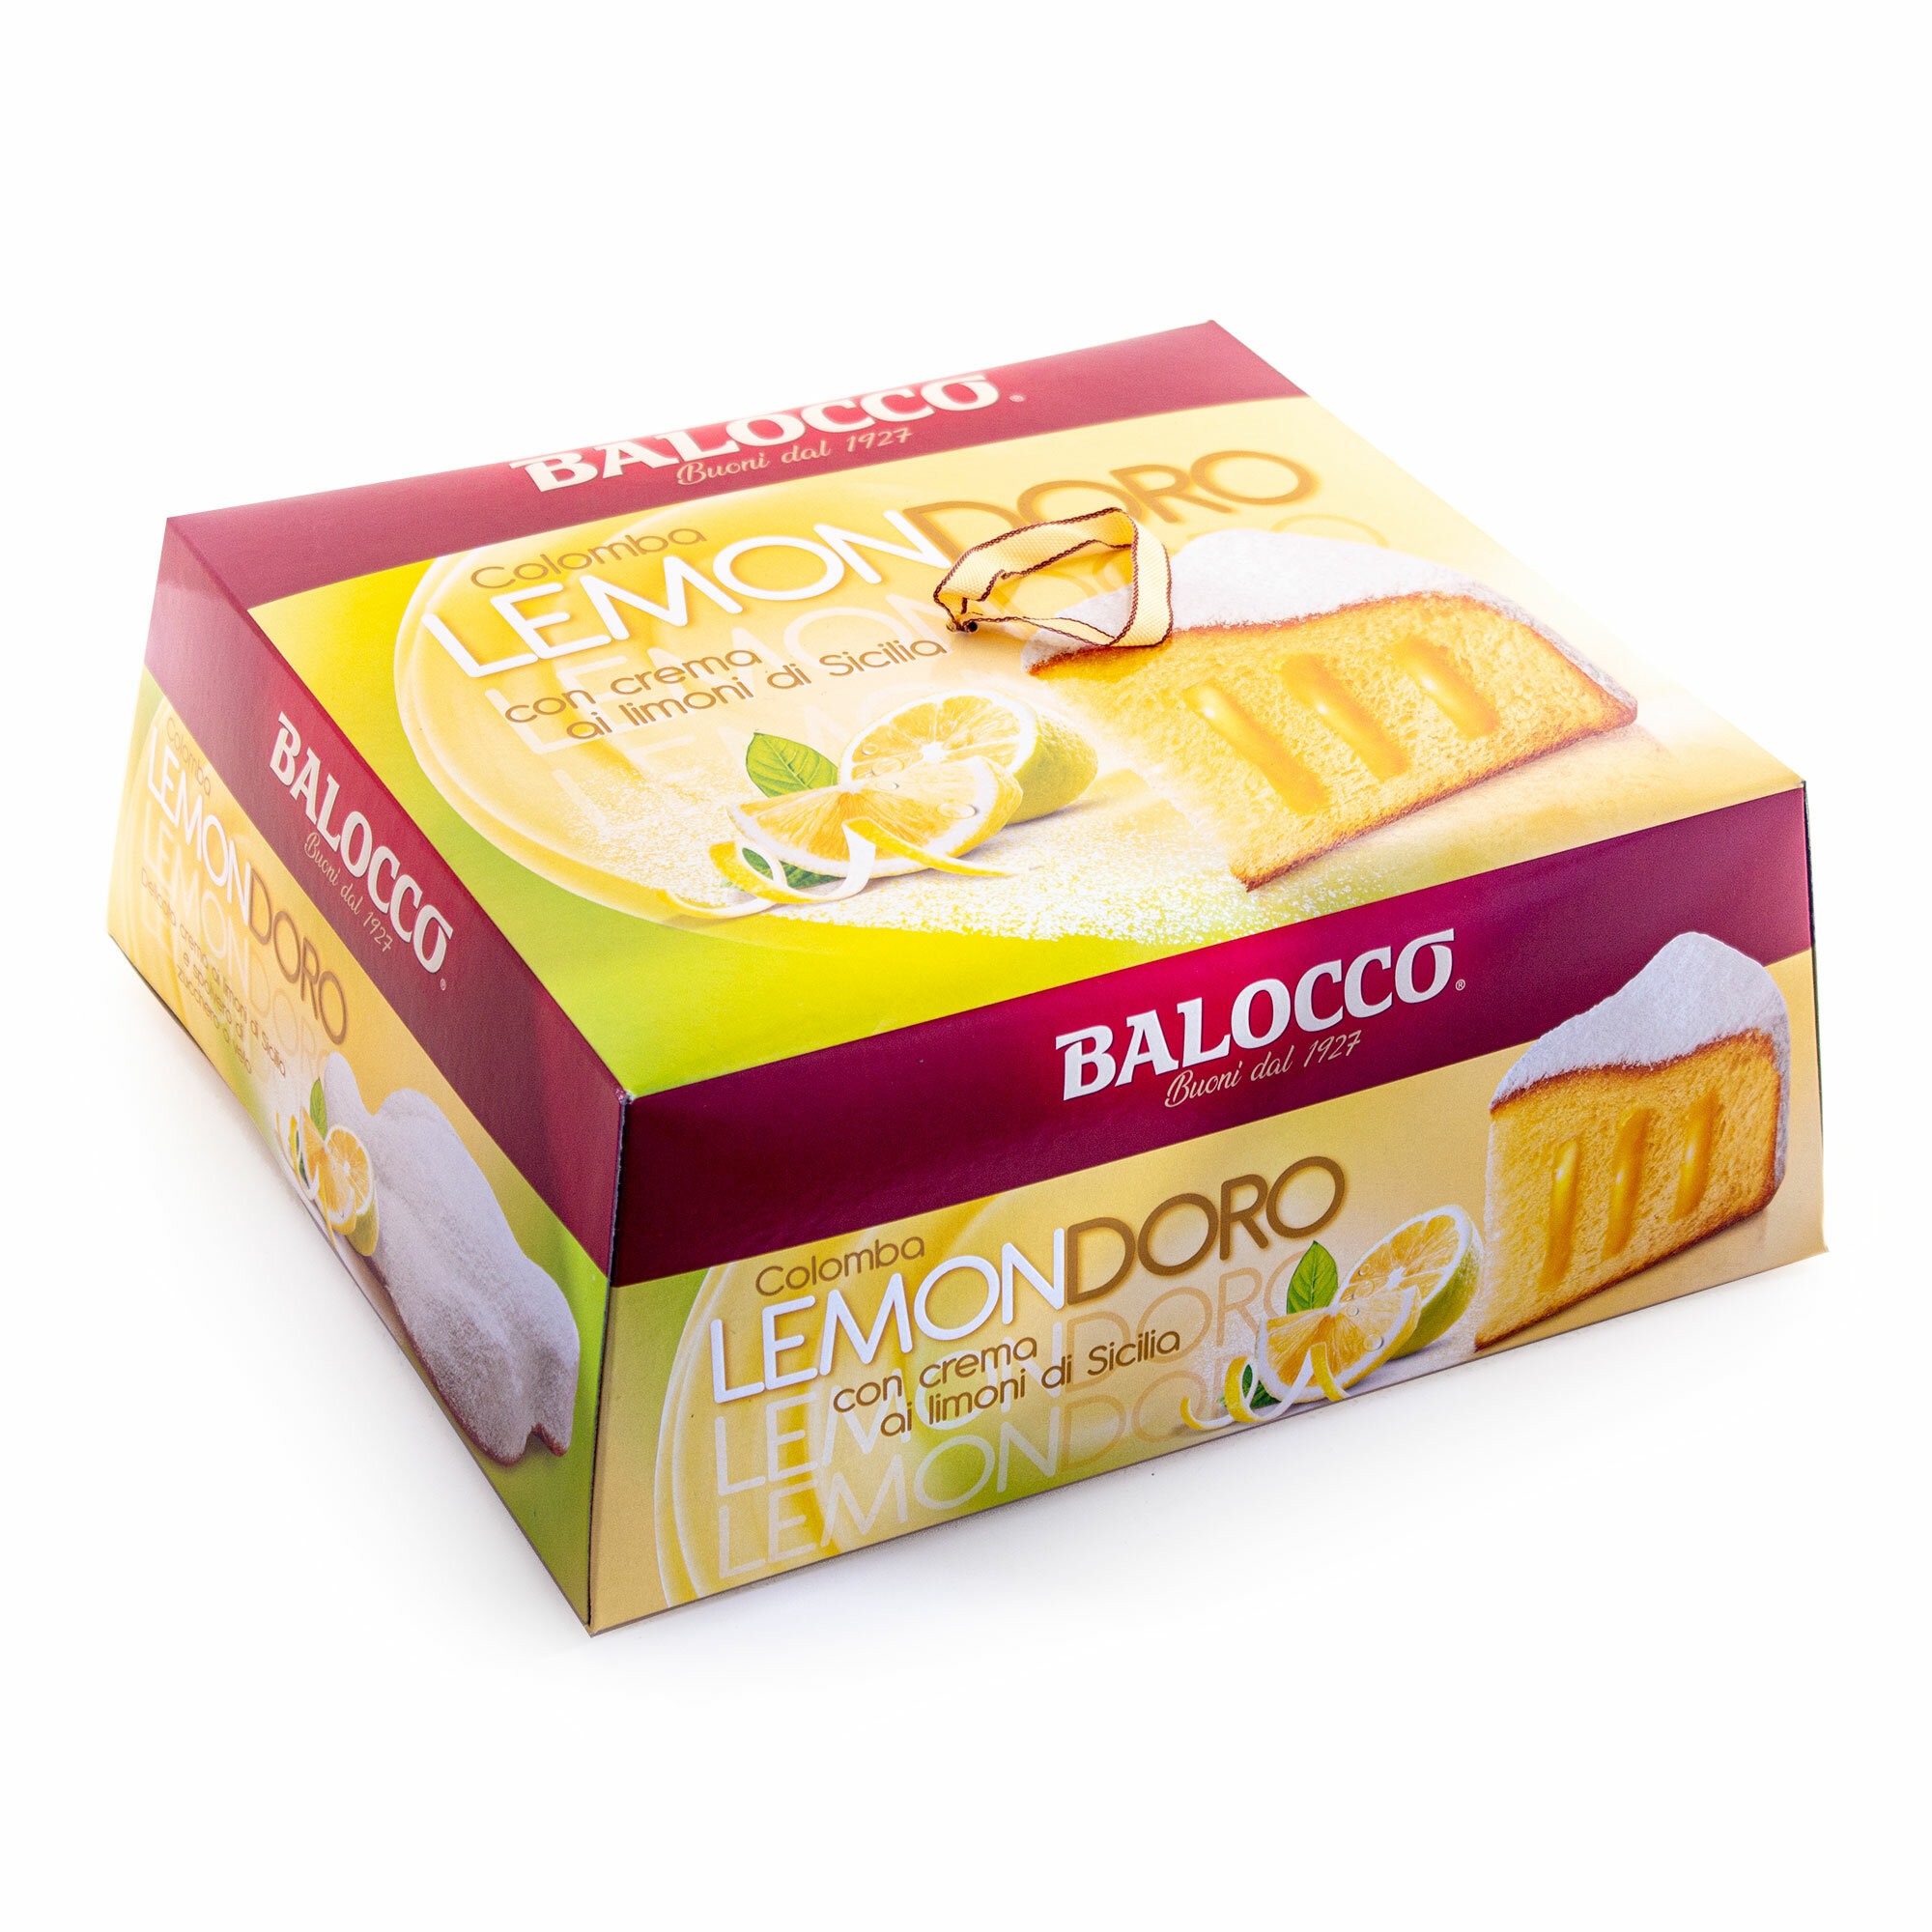 Коломба LEMONDORO, пасхальный кулич с кремом из сицилийских лимонов, BALOCCO, 0,75 кг (карт/кор) - фотография № 1